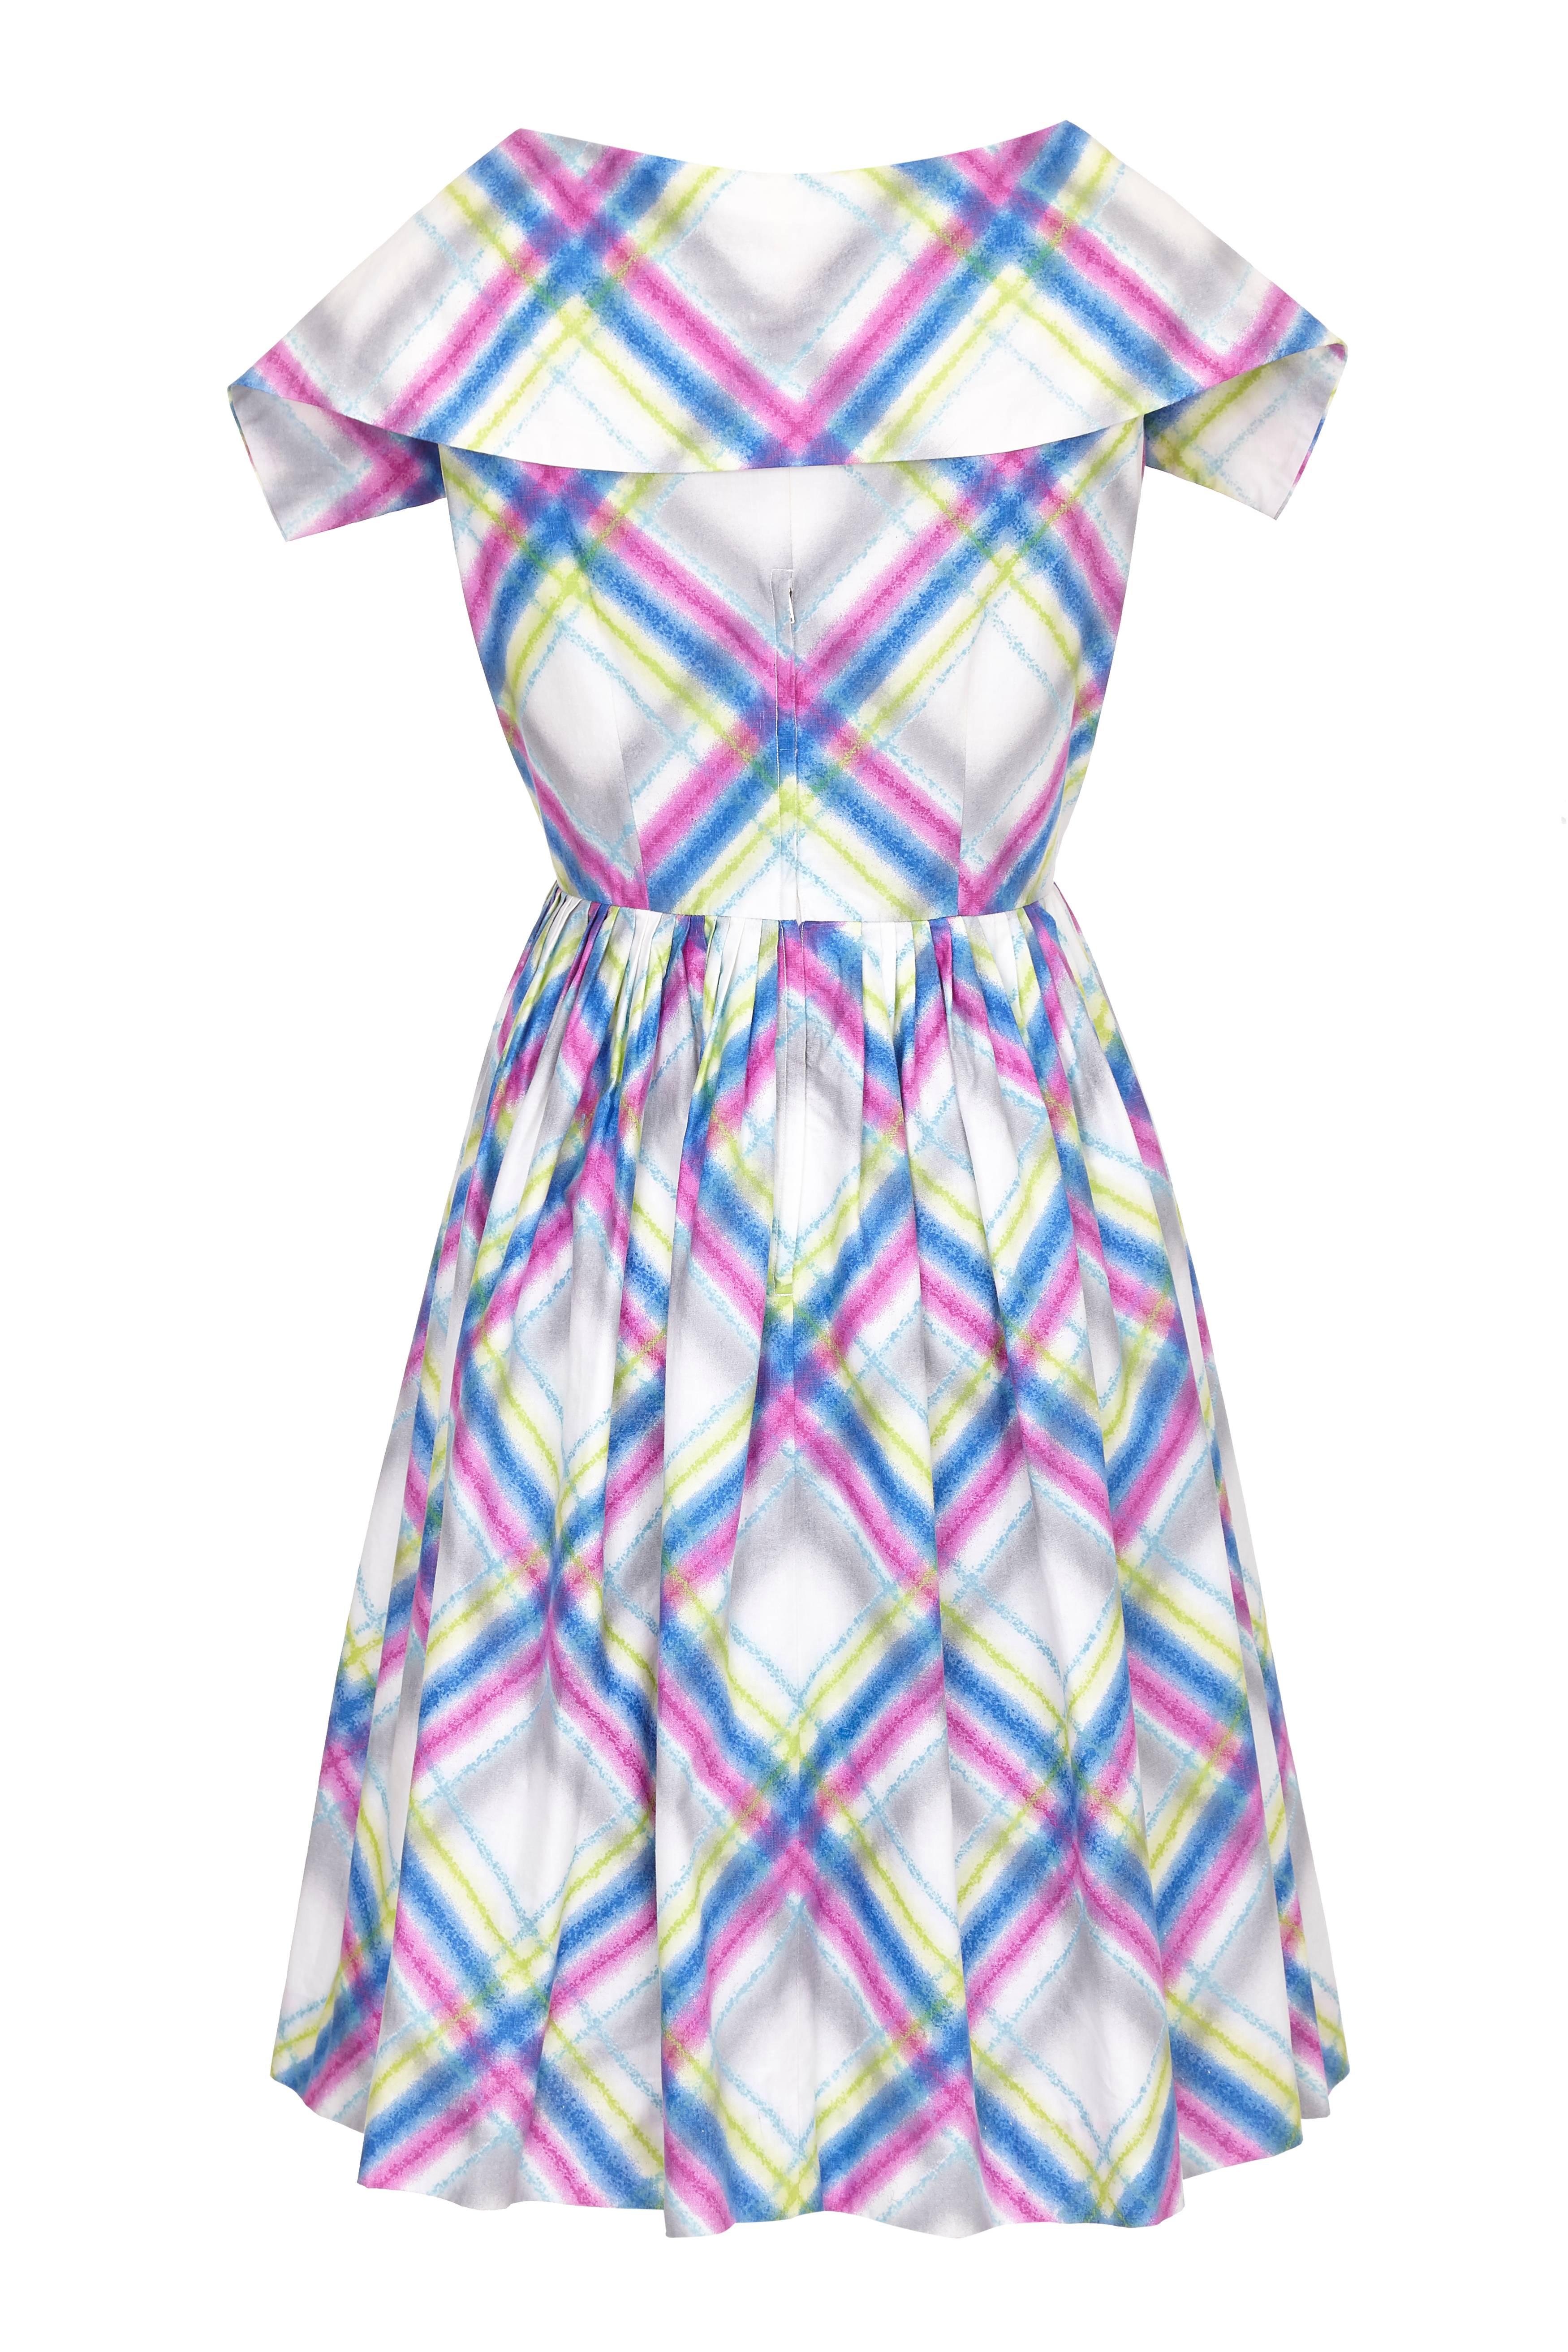 Cette jolie robe en coton des années 1950 à imprimé écossais multicolore présente une profonde encolure en V avec un large col, un devant enveloppant et une jupe plissée à longueur de mollet. Le tissu de coton épais a conservé toute la vivacité de